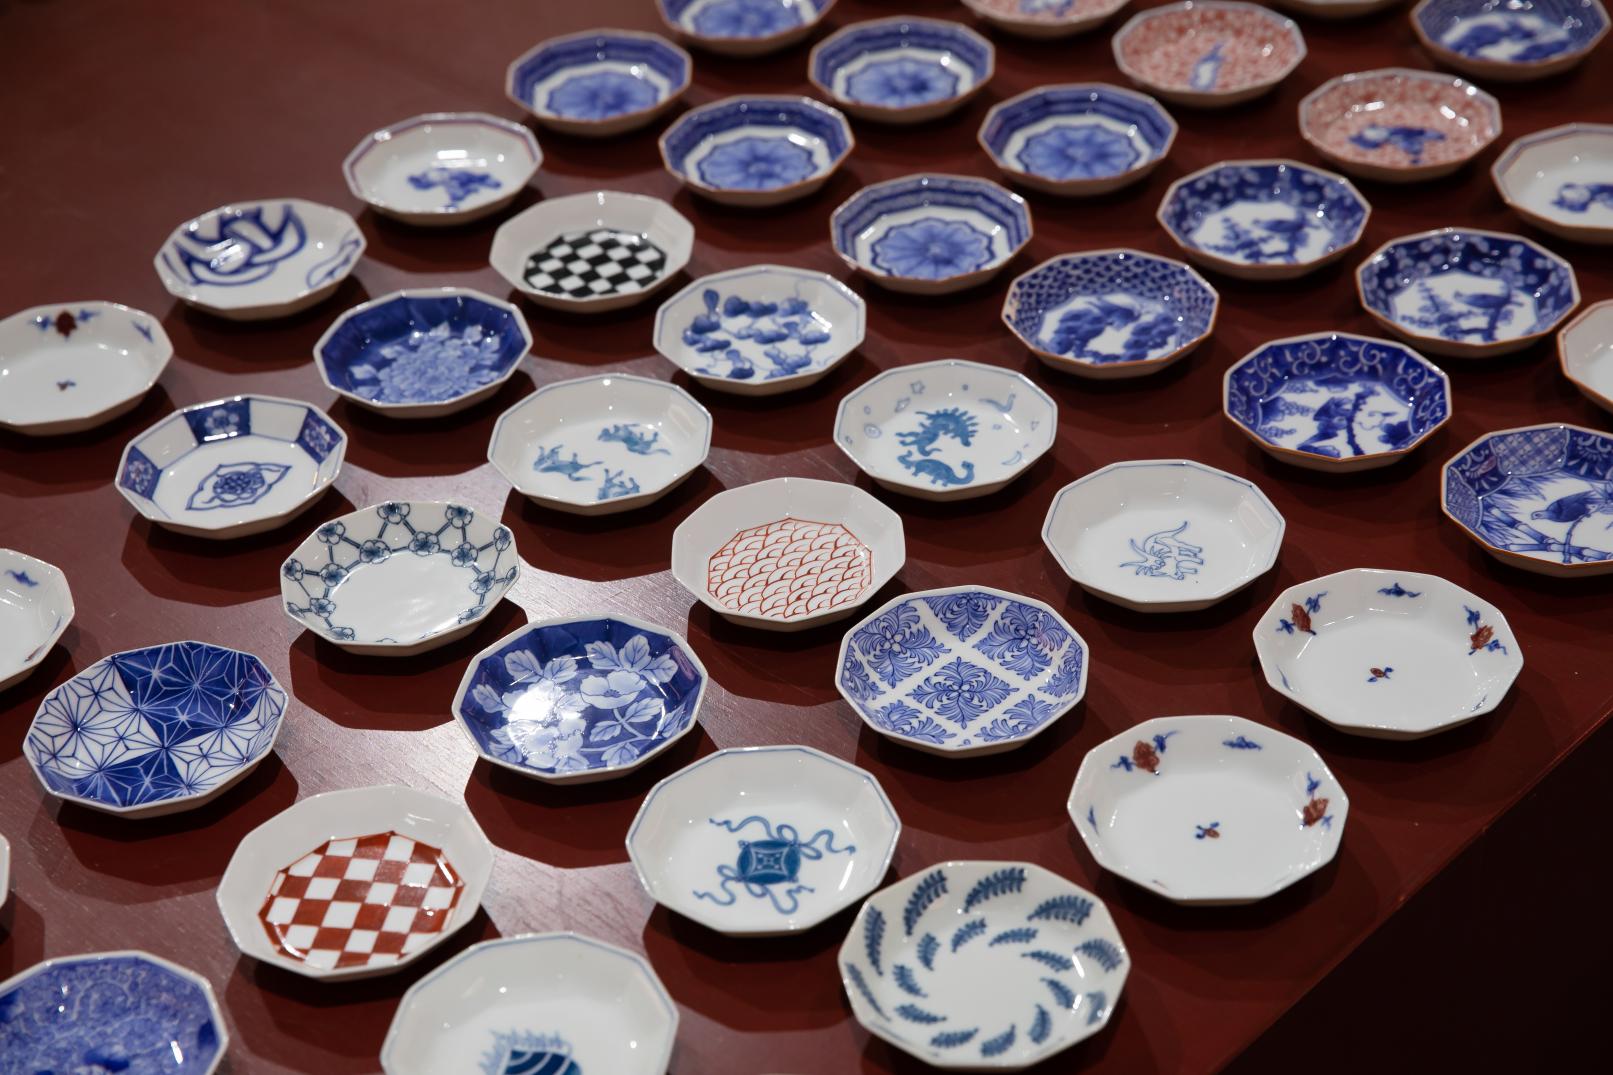 【出租车方案】带您游览拥有400年历史的佐世保陶瓷之乡三河内的路线-4